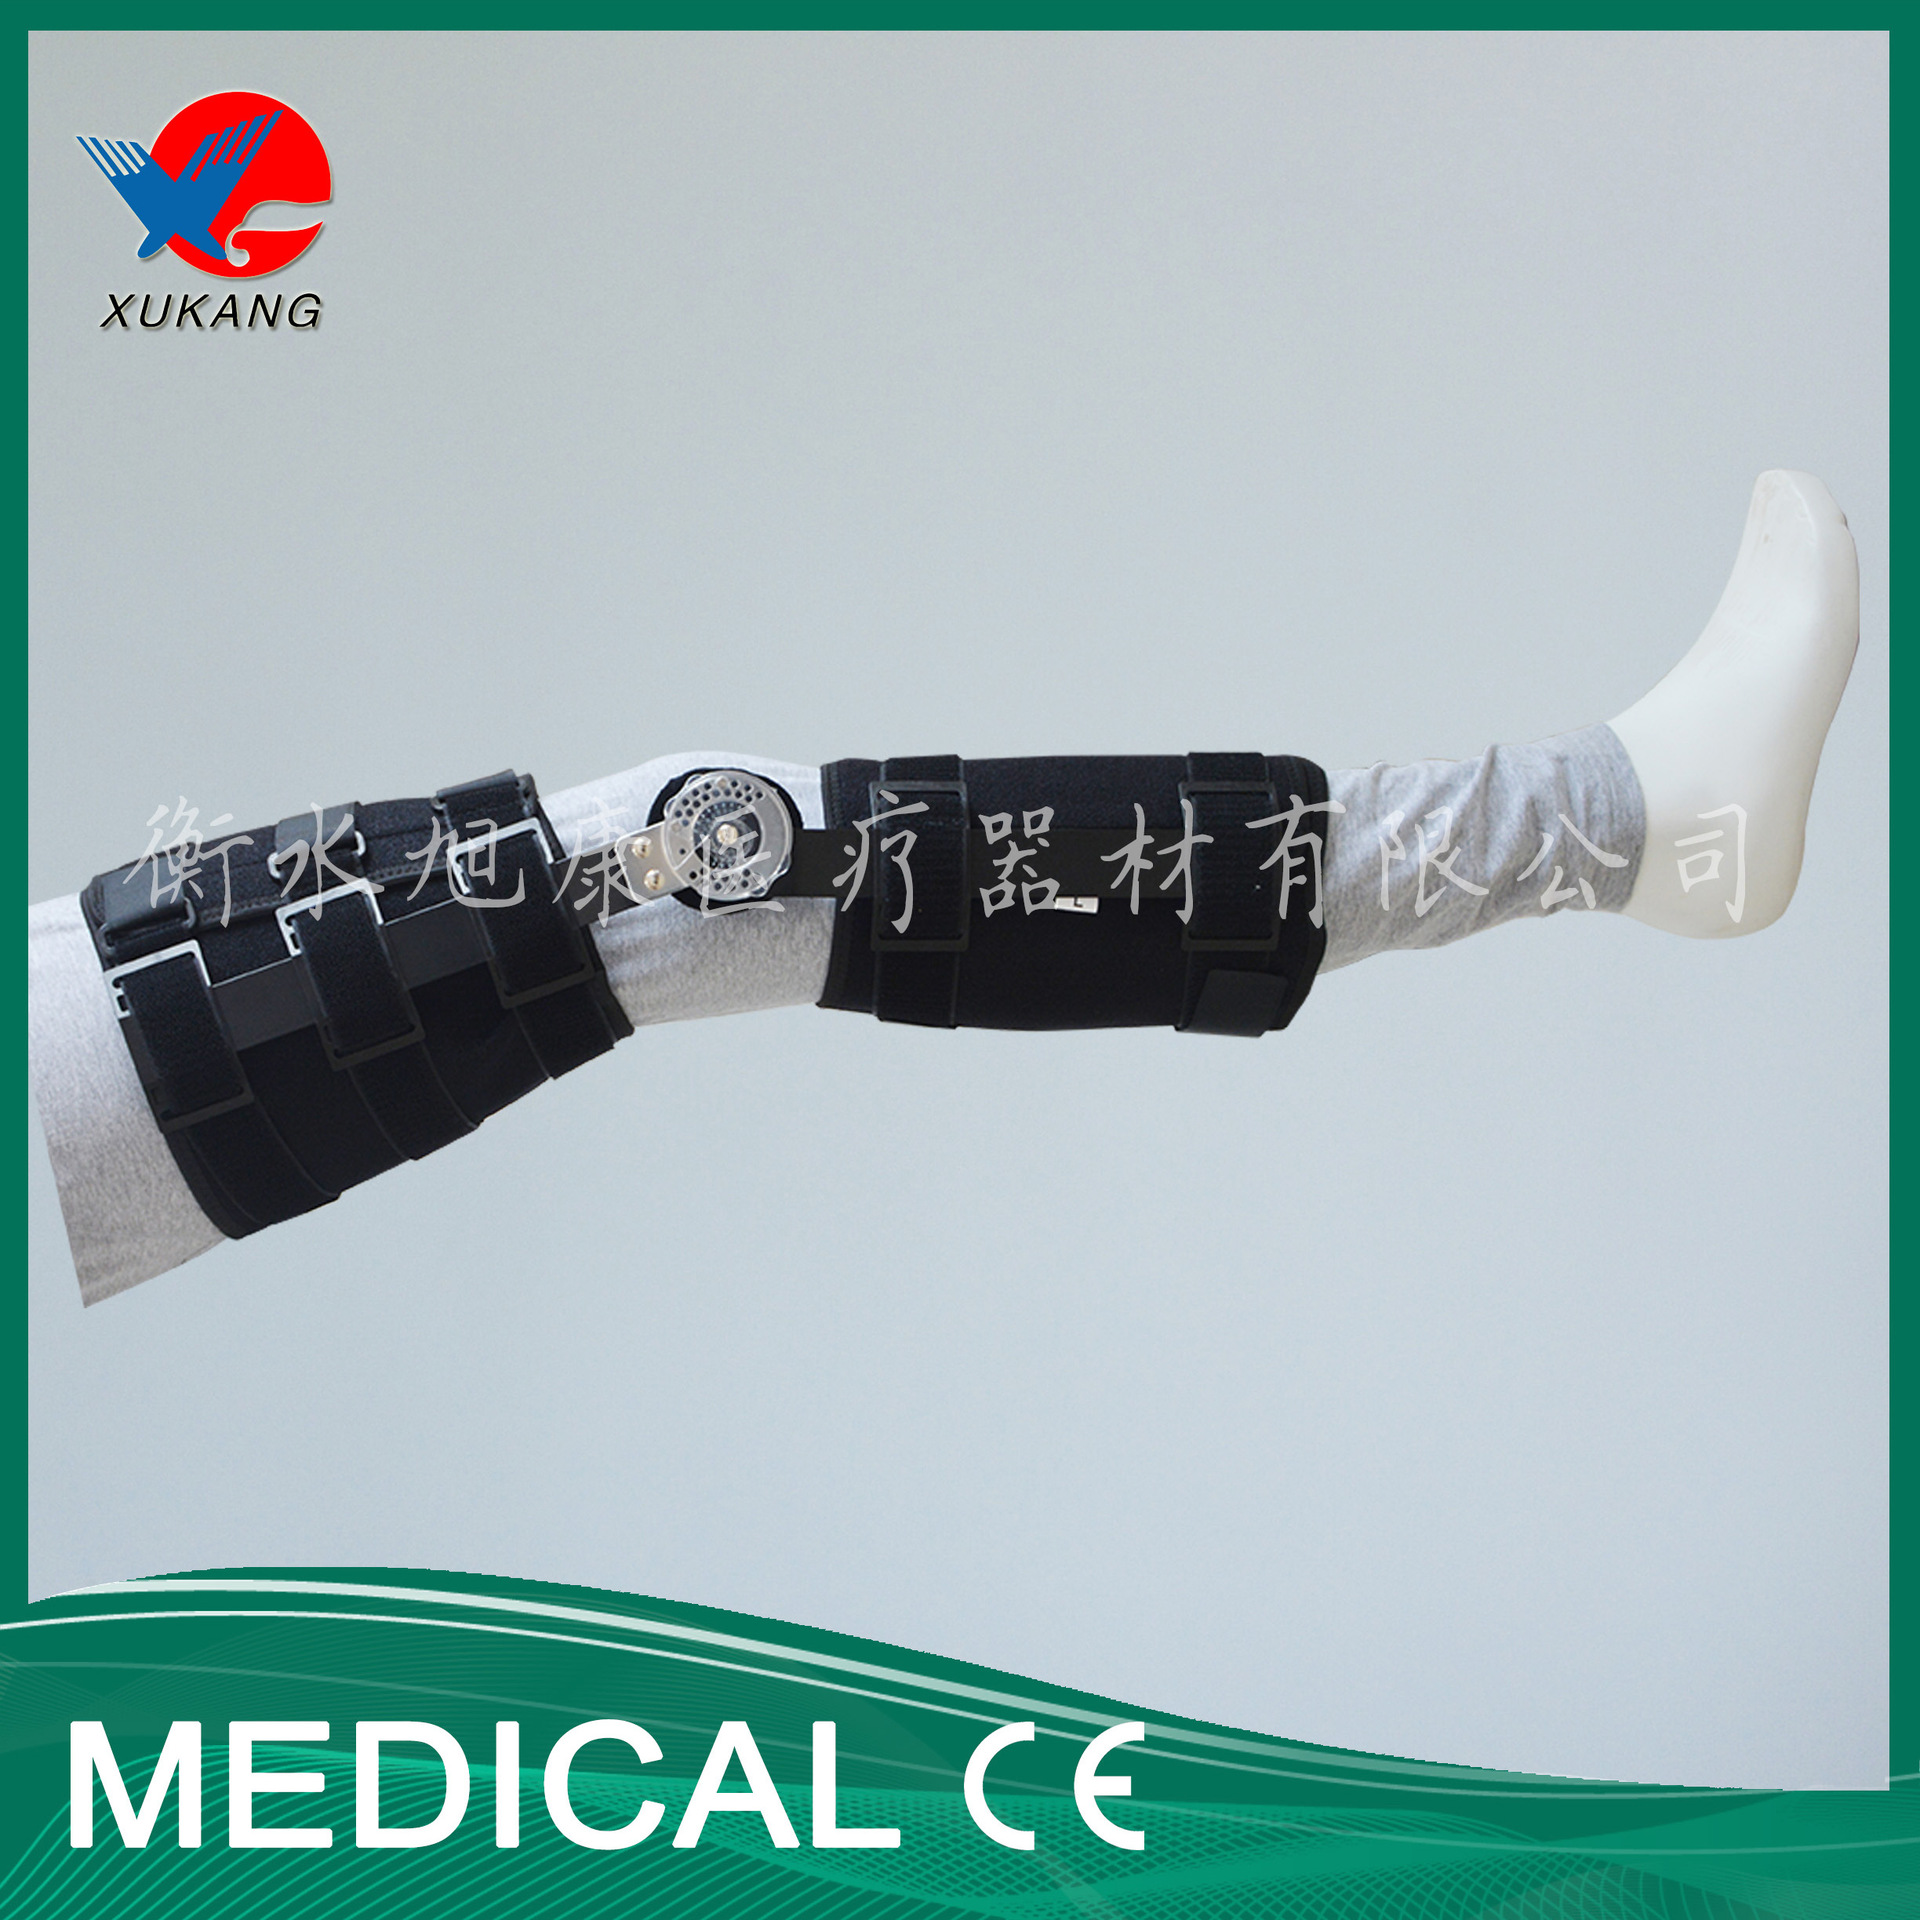 医用可调式卡盘膝关节矫形器 下肢固定支架矫形 膝关节固定支具